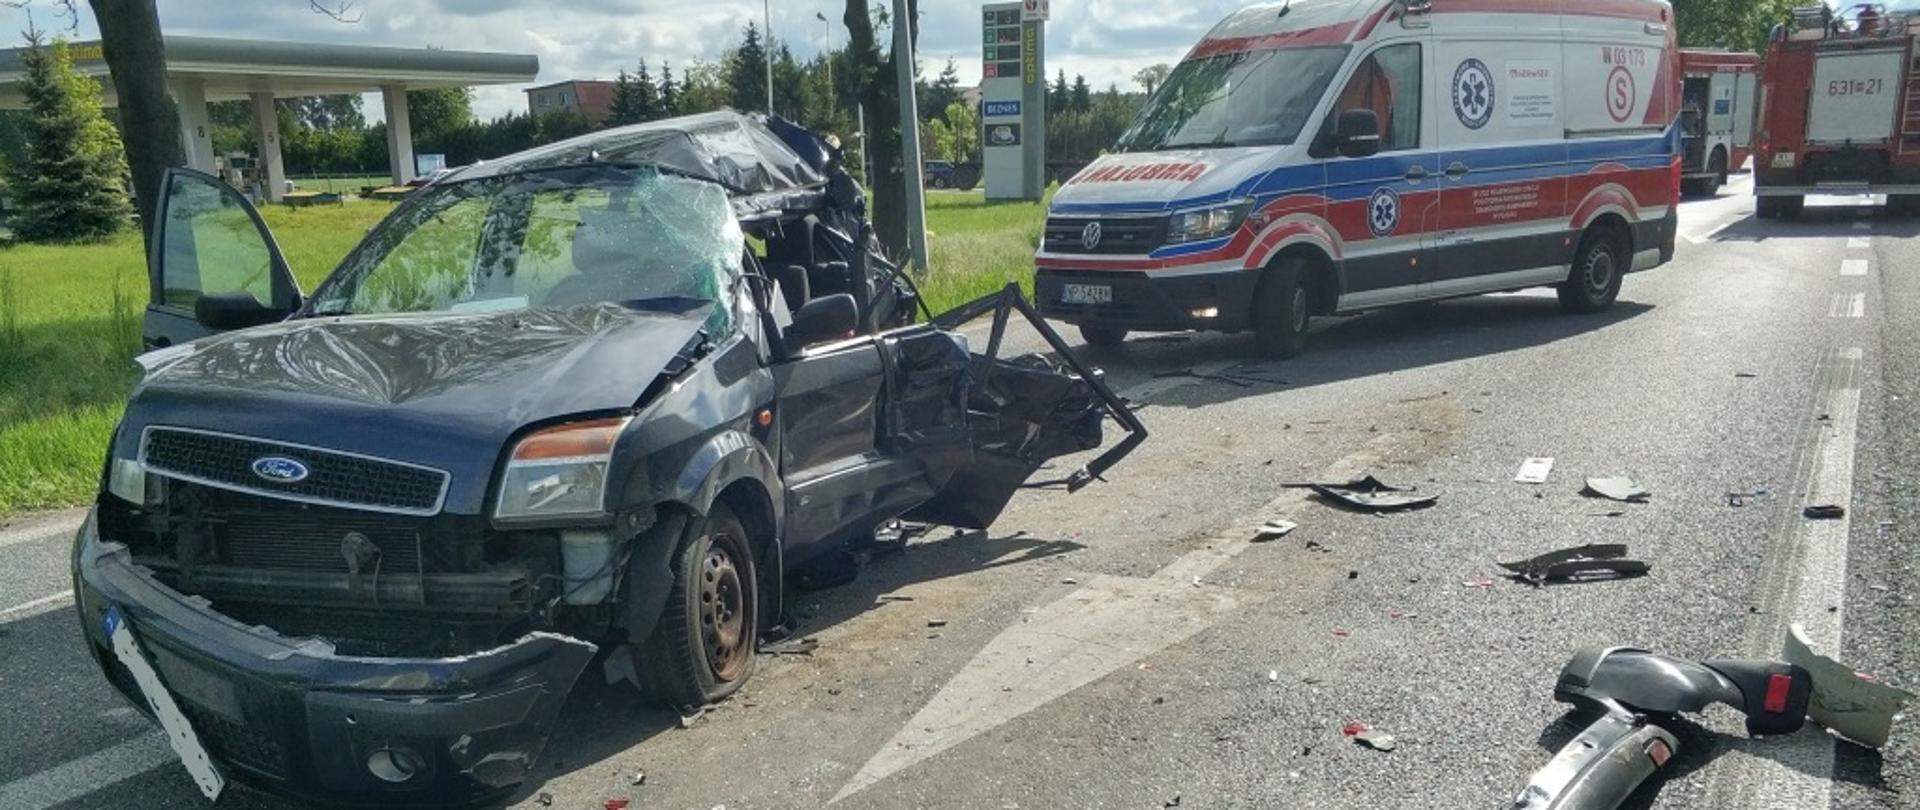 Widok na rozbity samochód osobowy marki Ford, na drugim planie ambulans. Na jezdni rozrzucone części rozbitego samochodu.